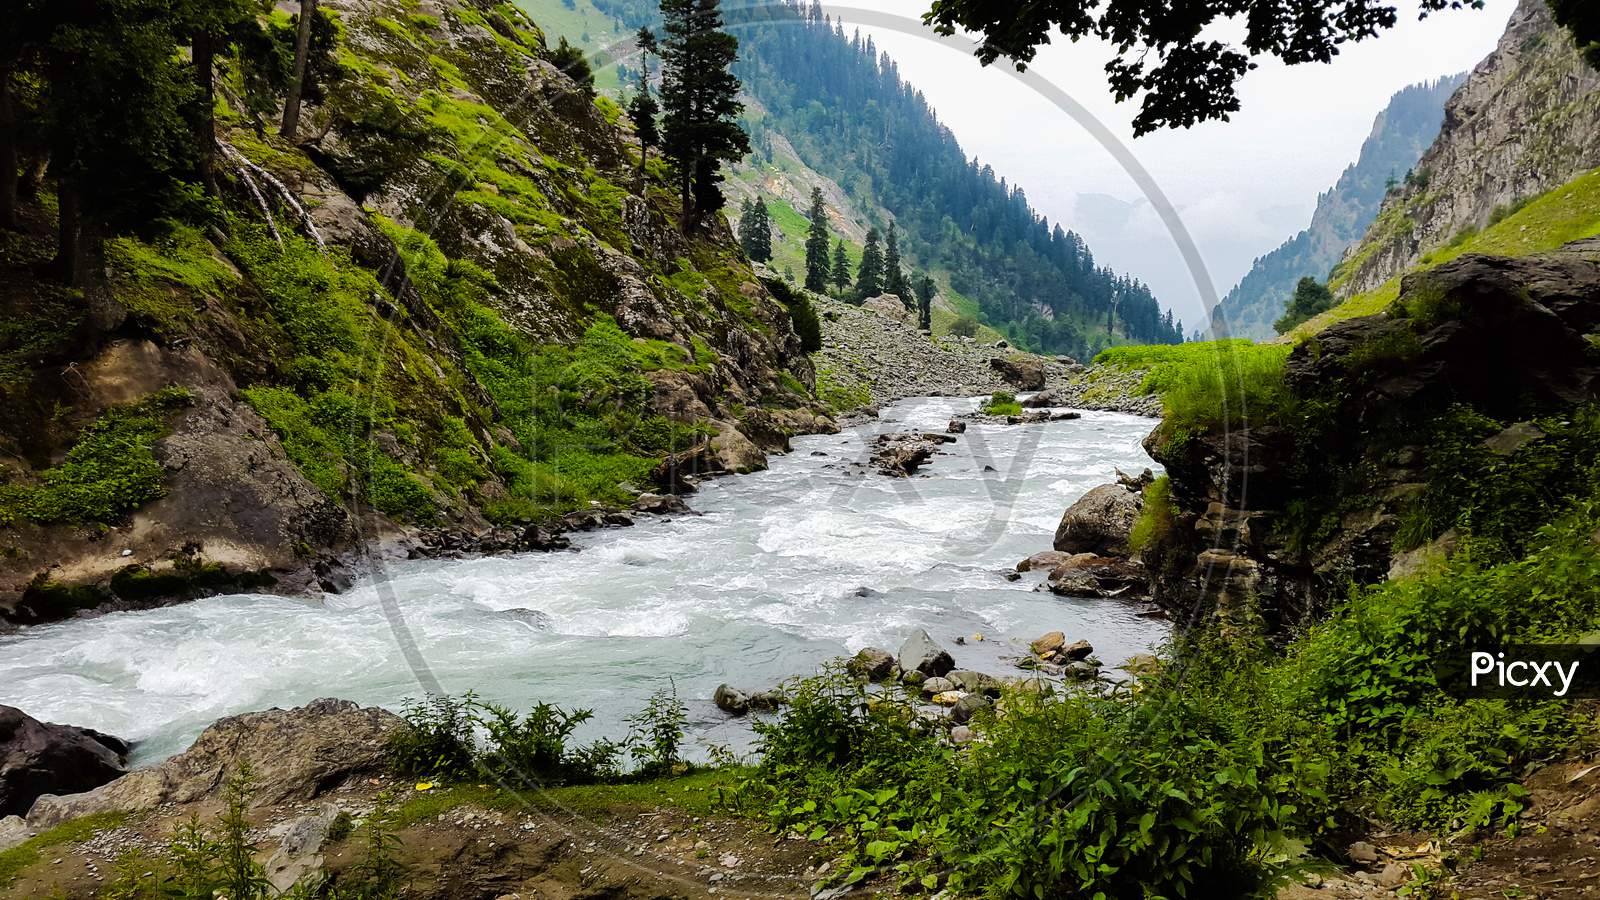 River flows through green Himalayas